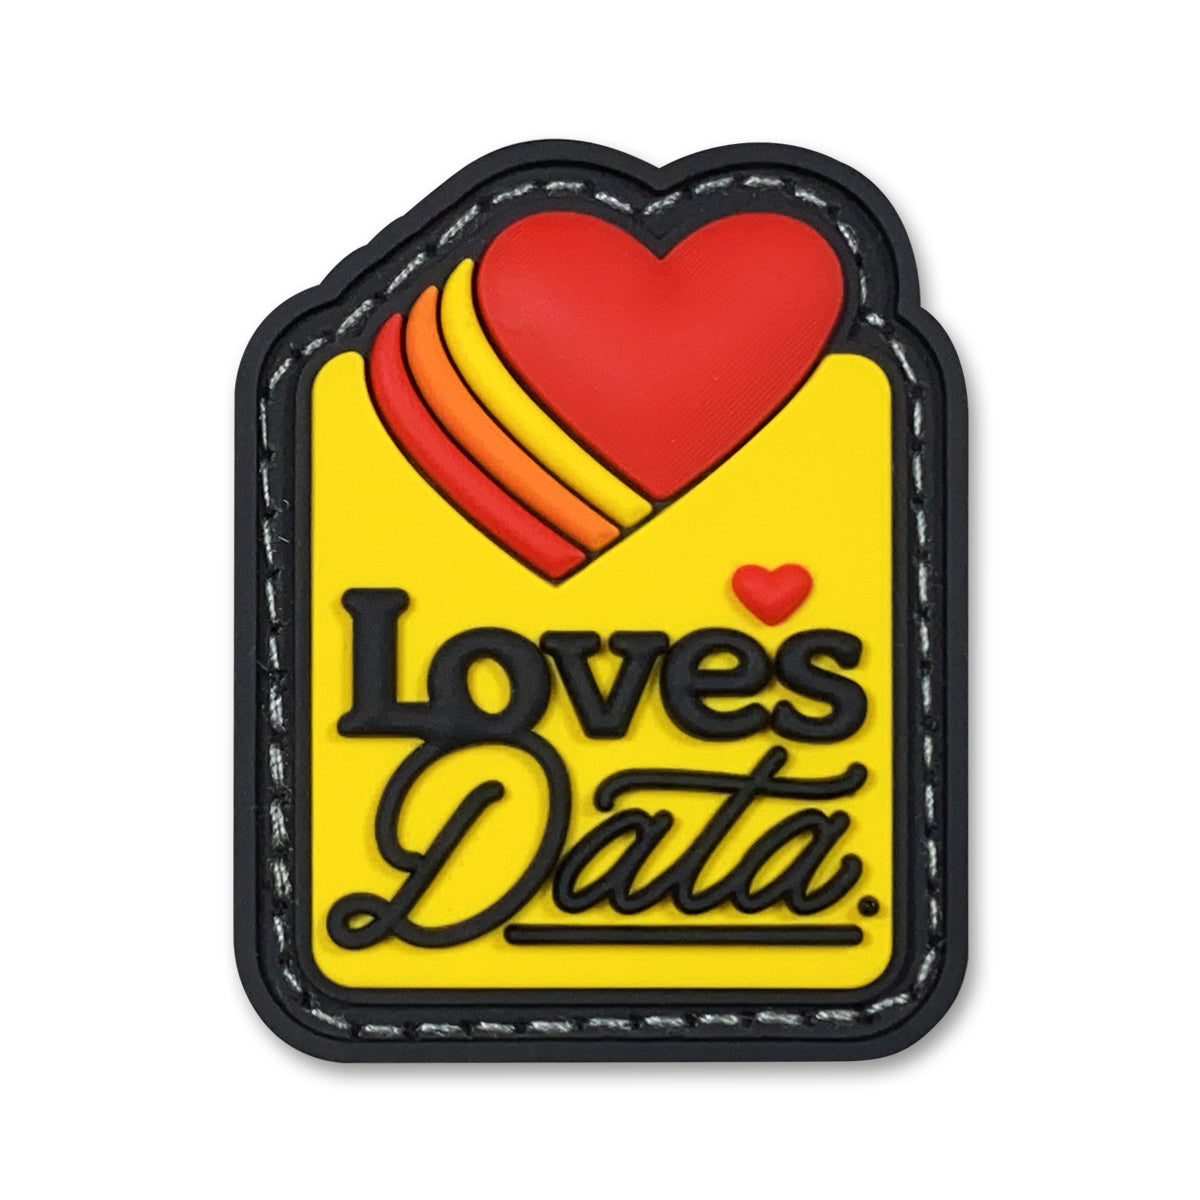 Data Love RE - datacrew